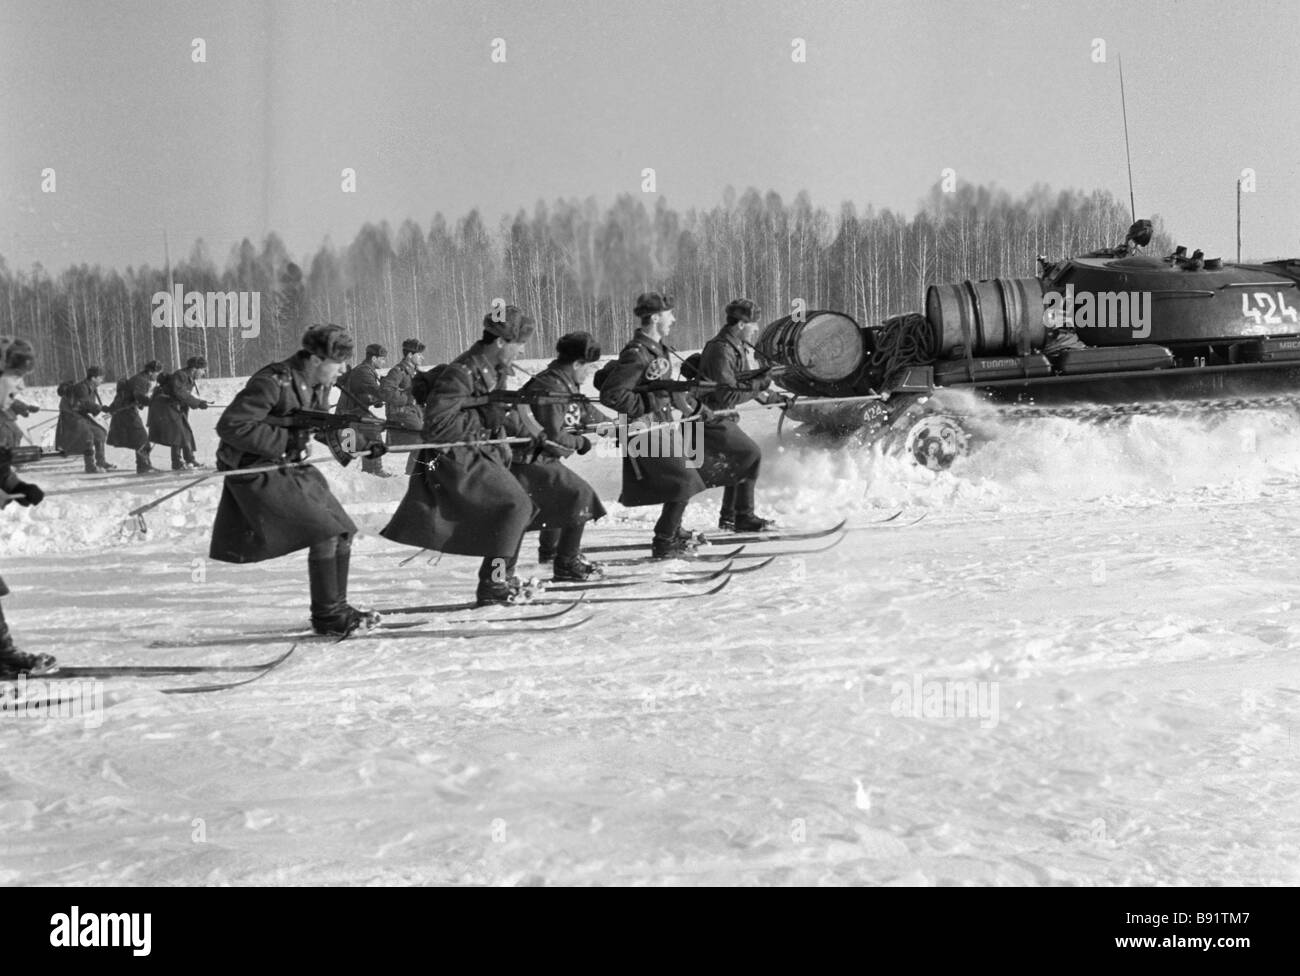 Un réservoir en tirant sur des skis fantassins lors d'exercices militaires dans le district militaire de Sibérie Banque D'Images